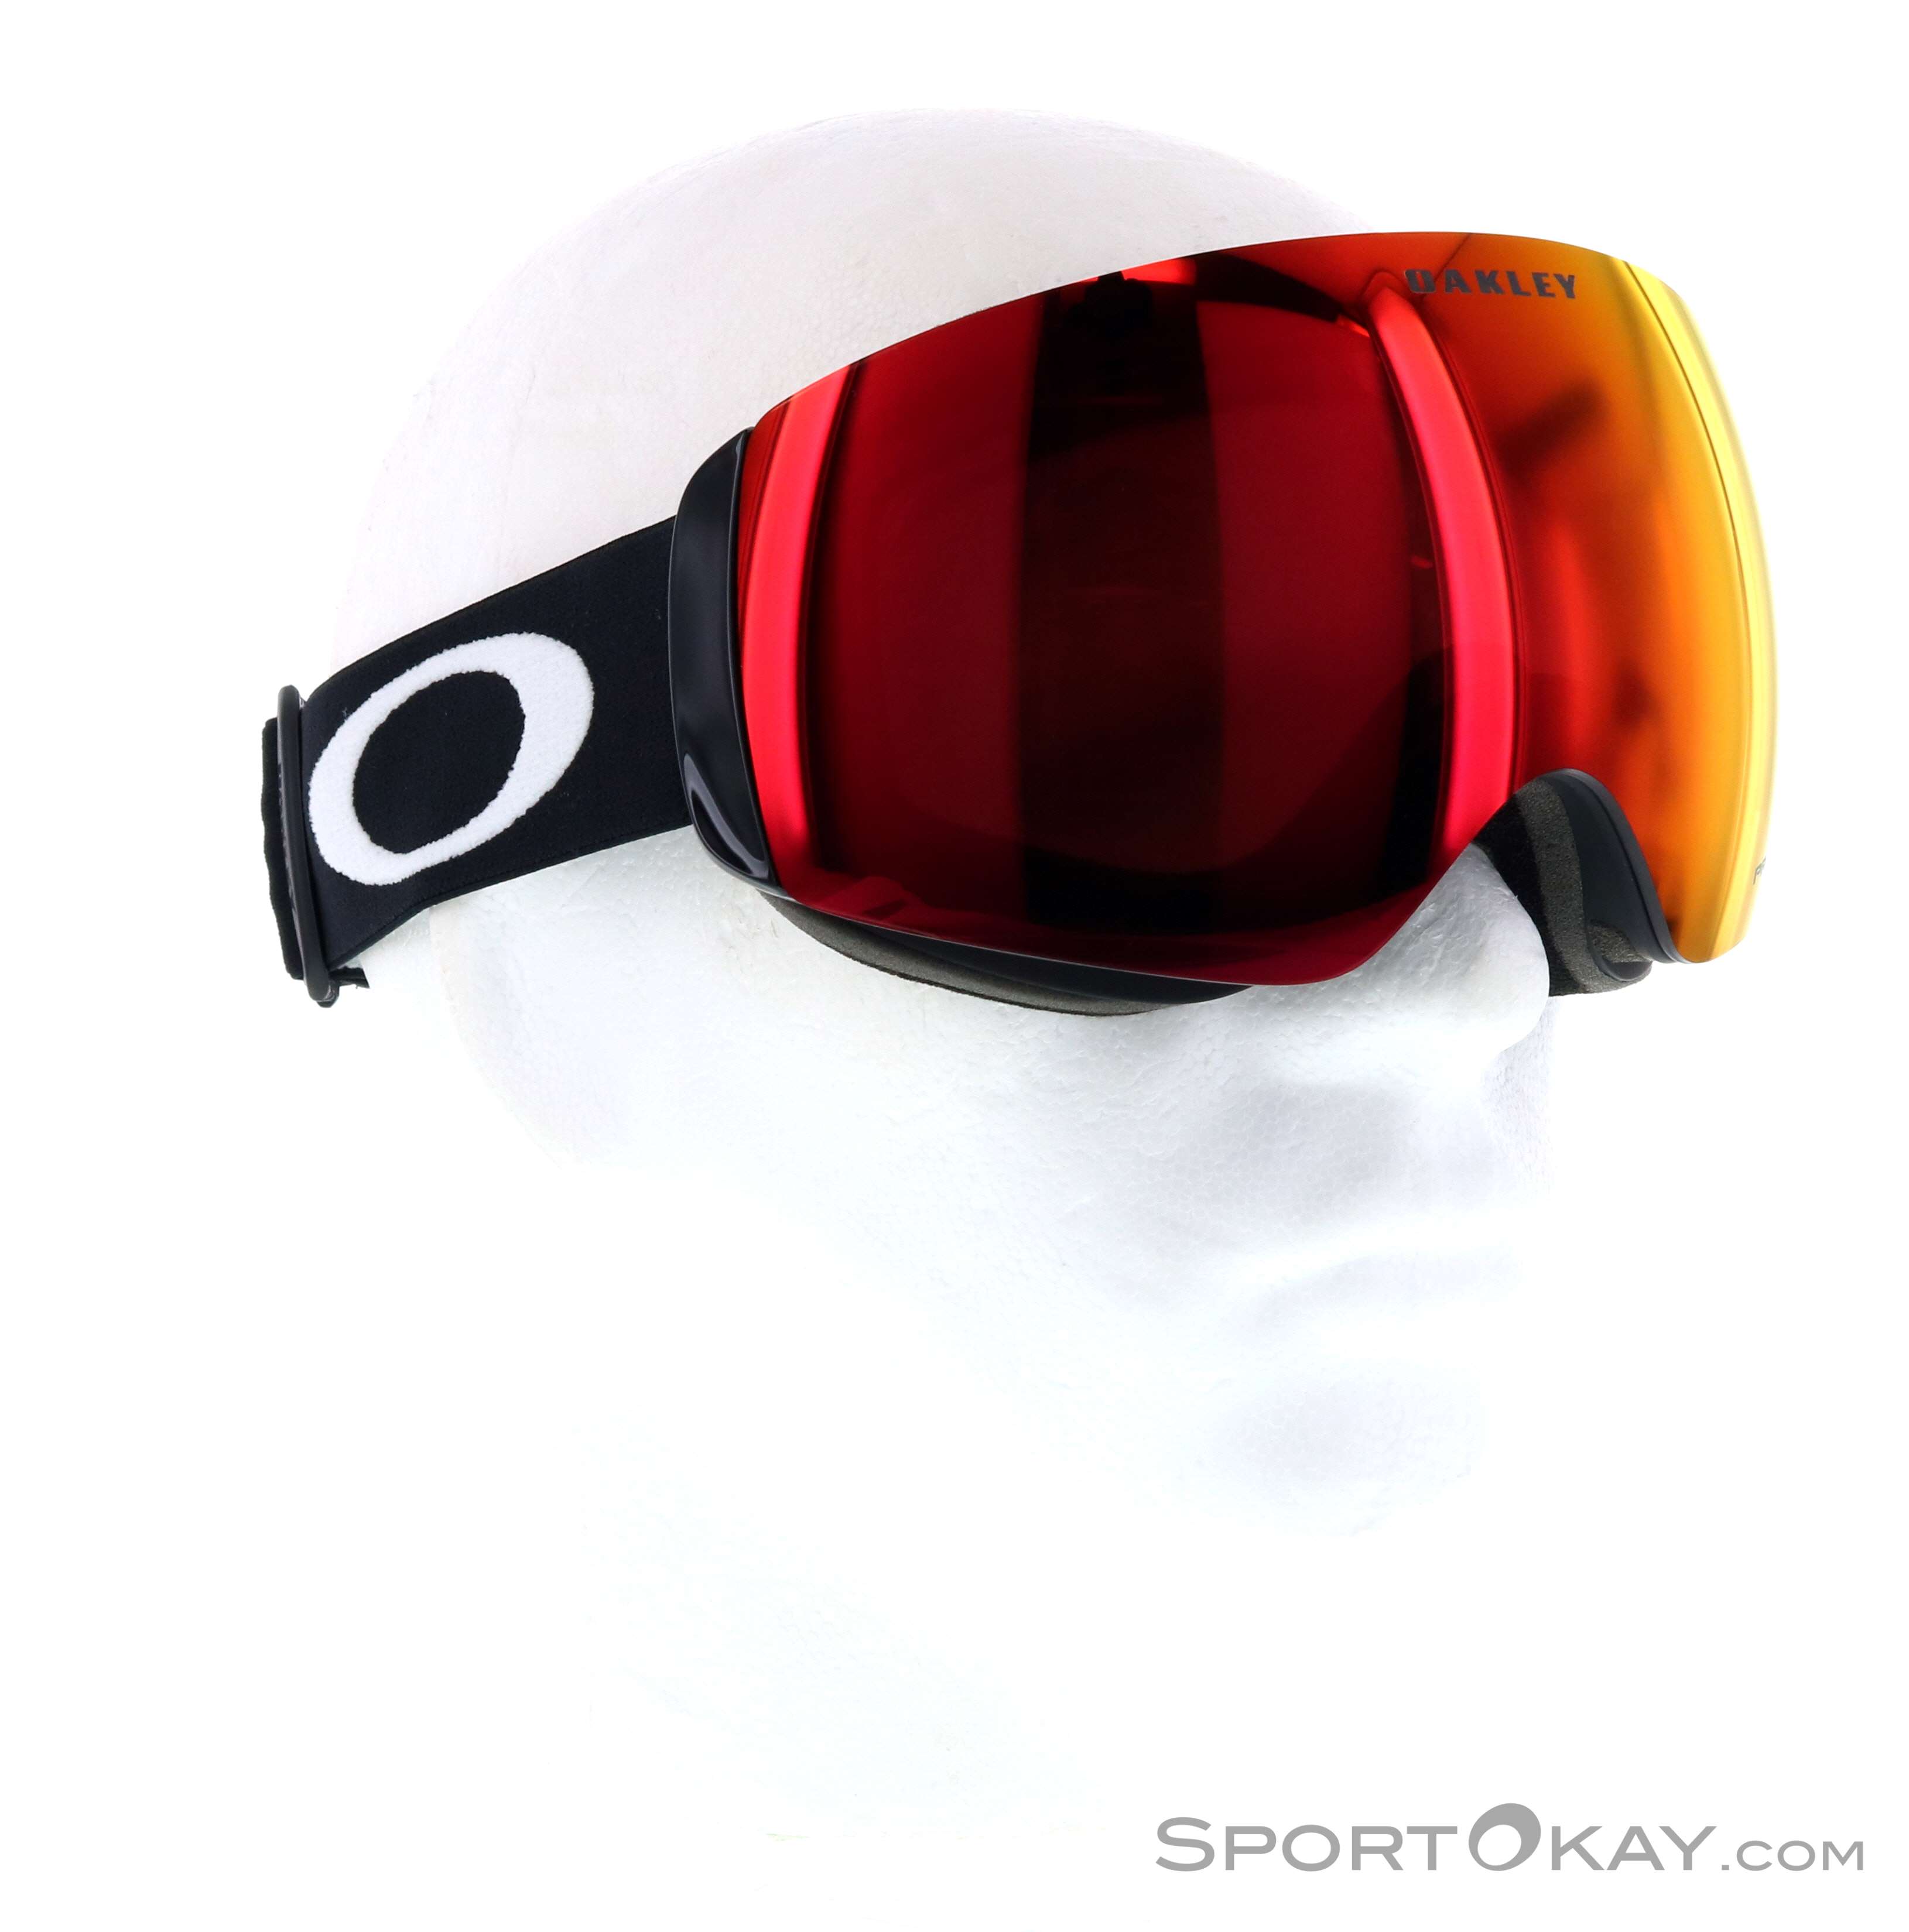 Gafas de esqui Flight Deck L Oakley de hombre de color Rojo